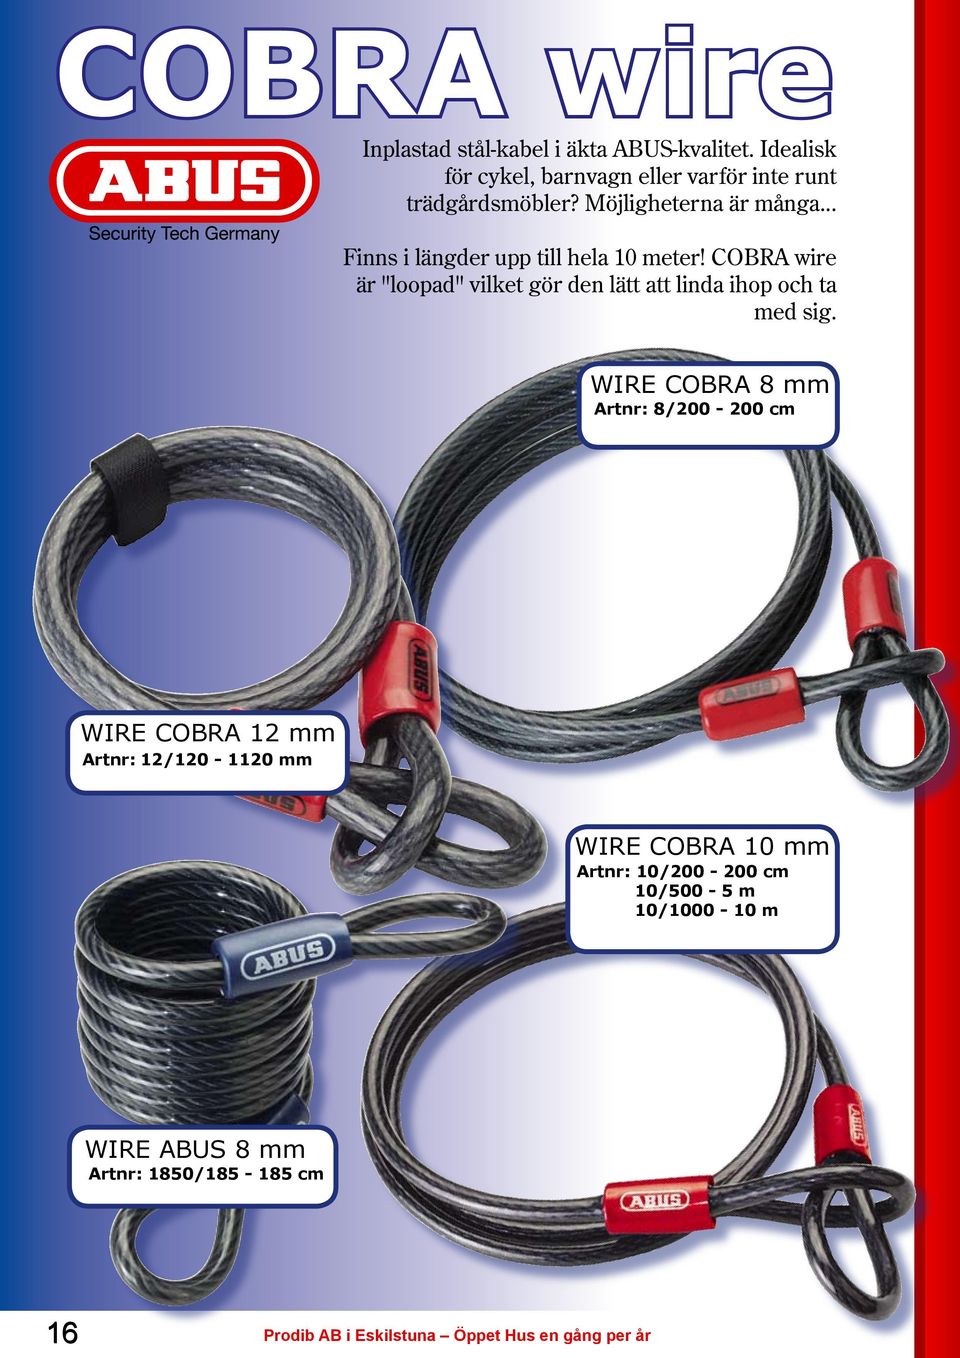 COBRA wire är "loopad" vilket gör den lätt att linda ihop och ta med sig.